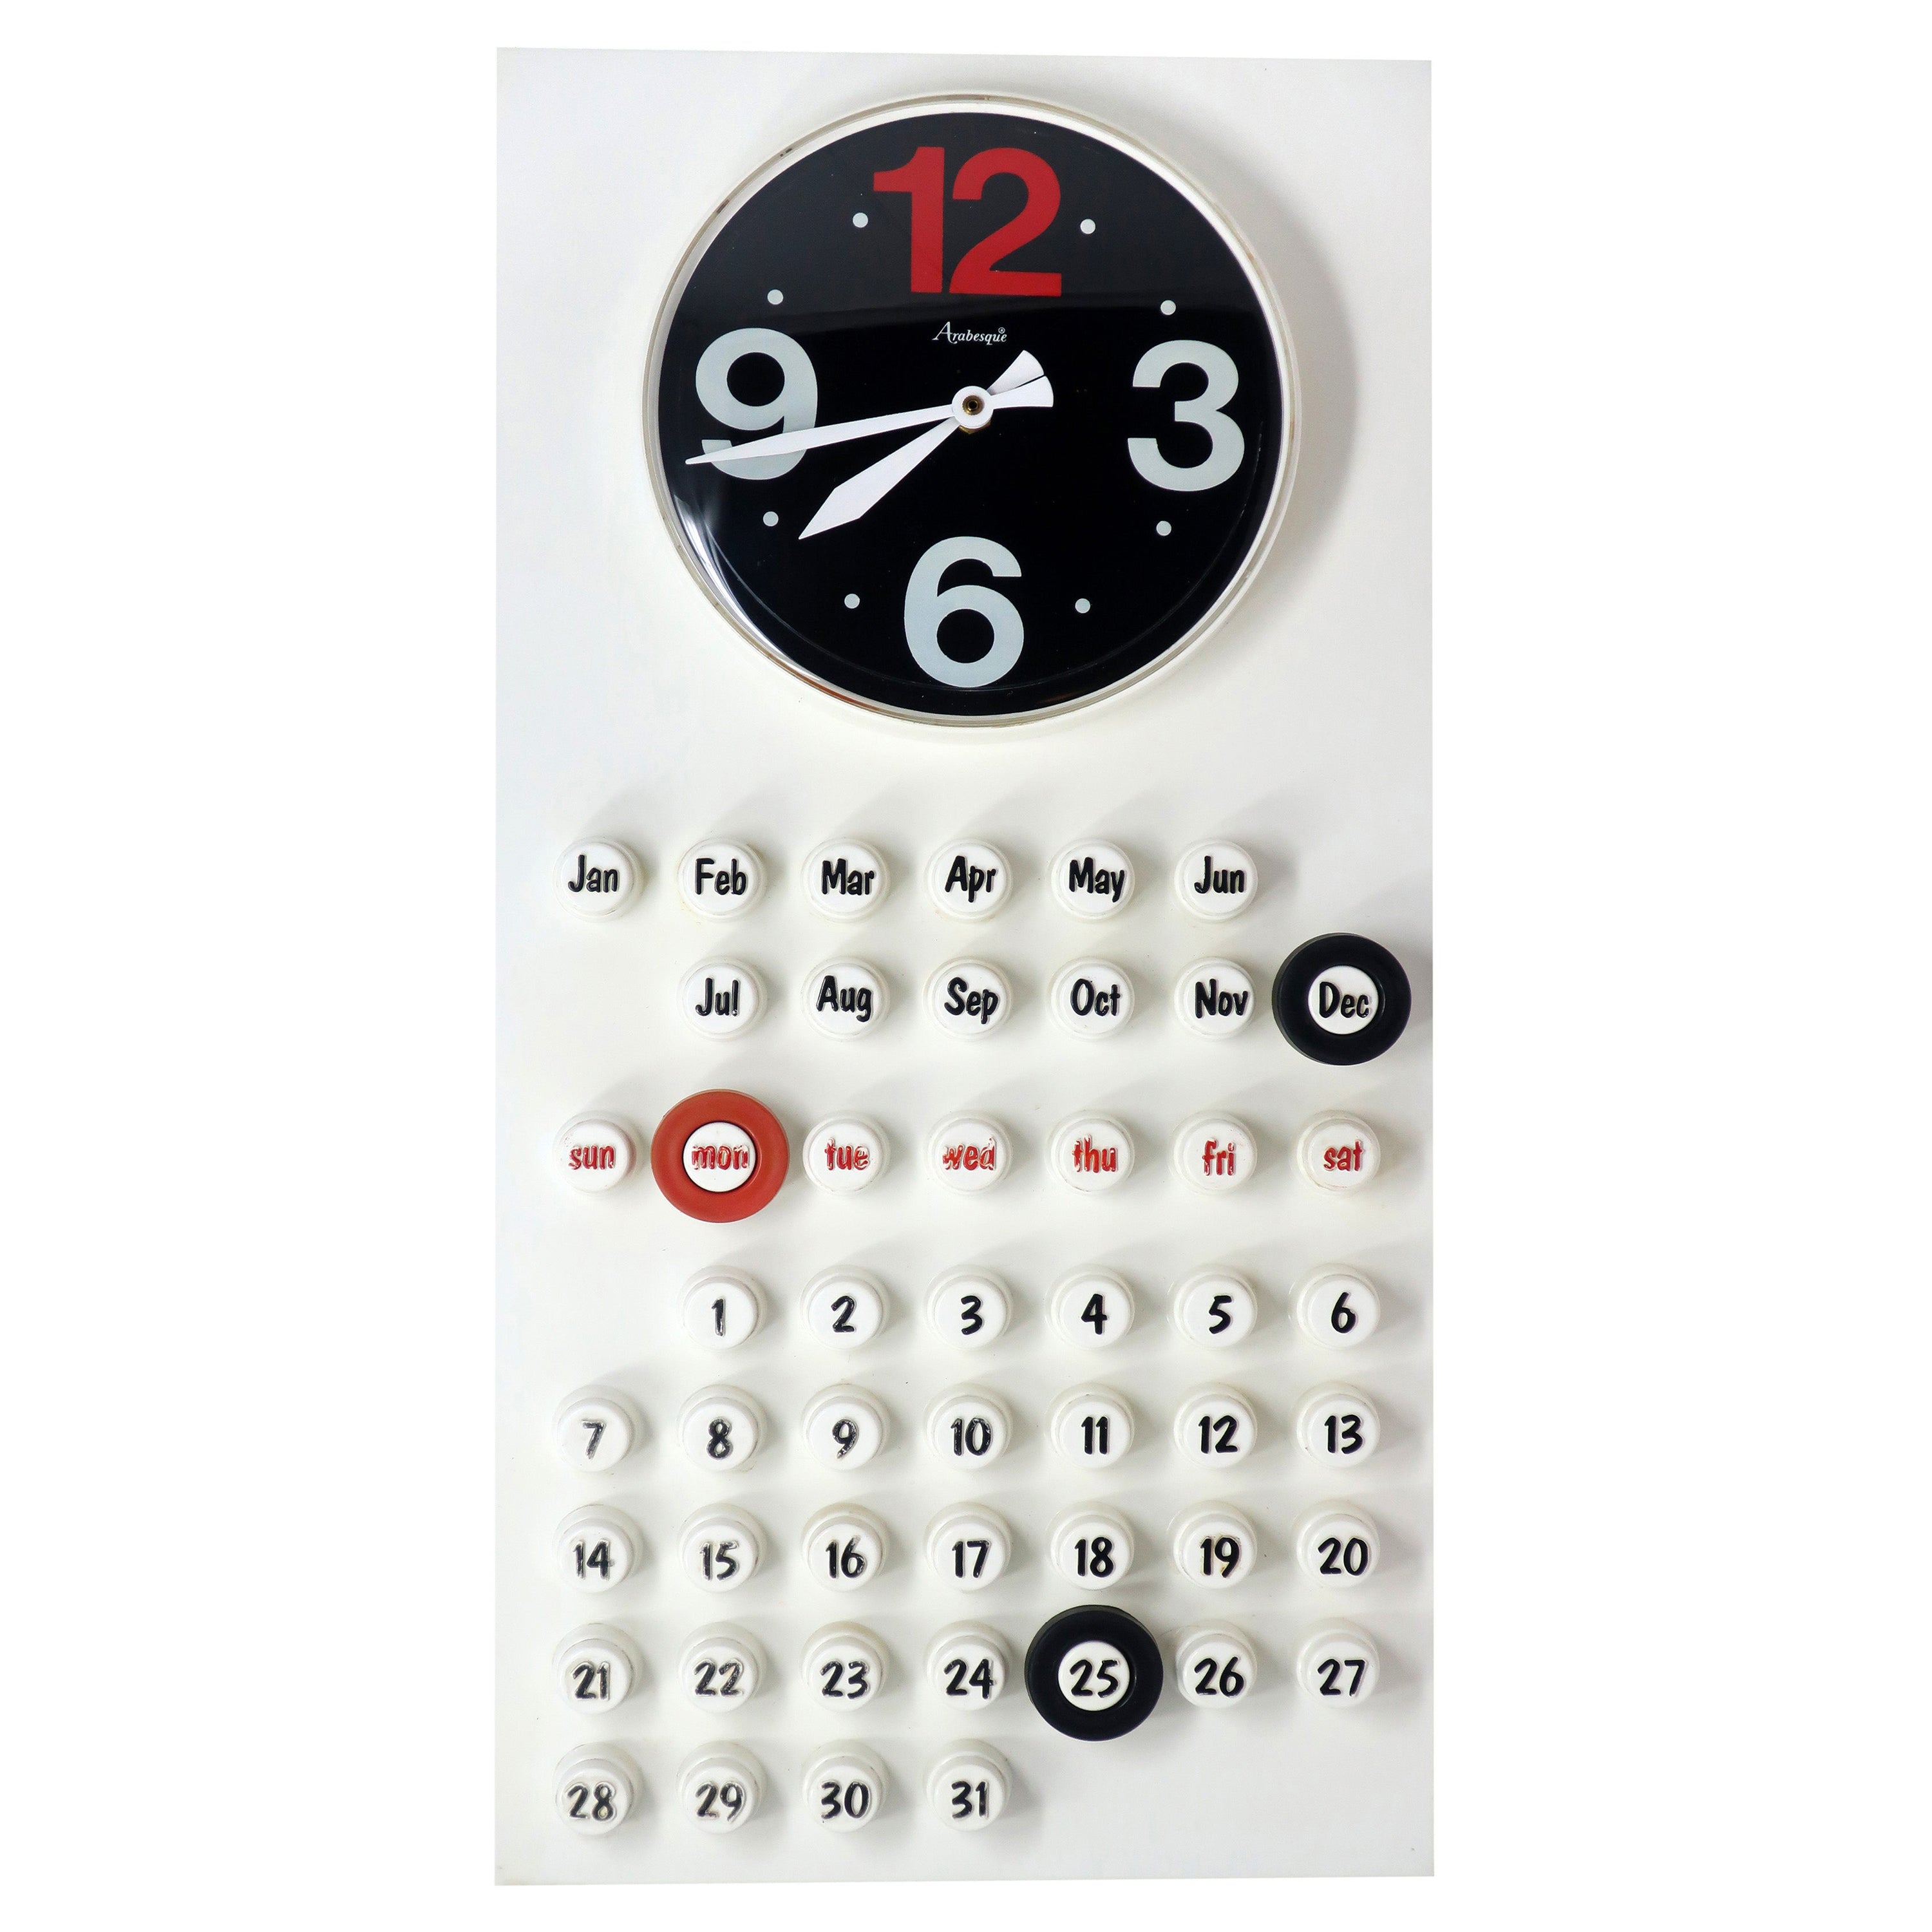 1970s Wall Clock and Perpetual Calendar